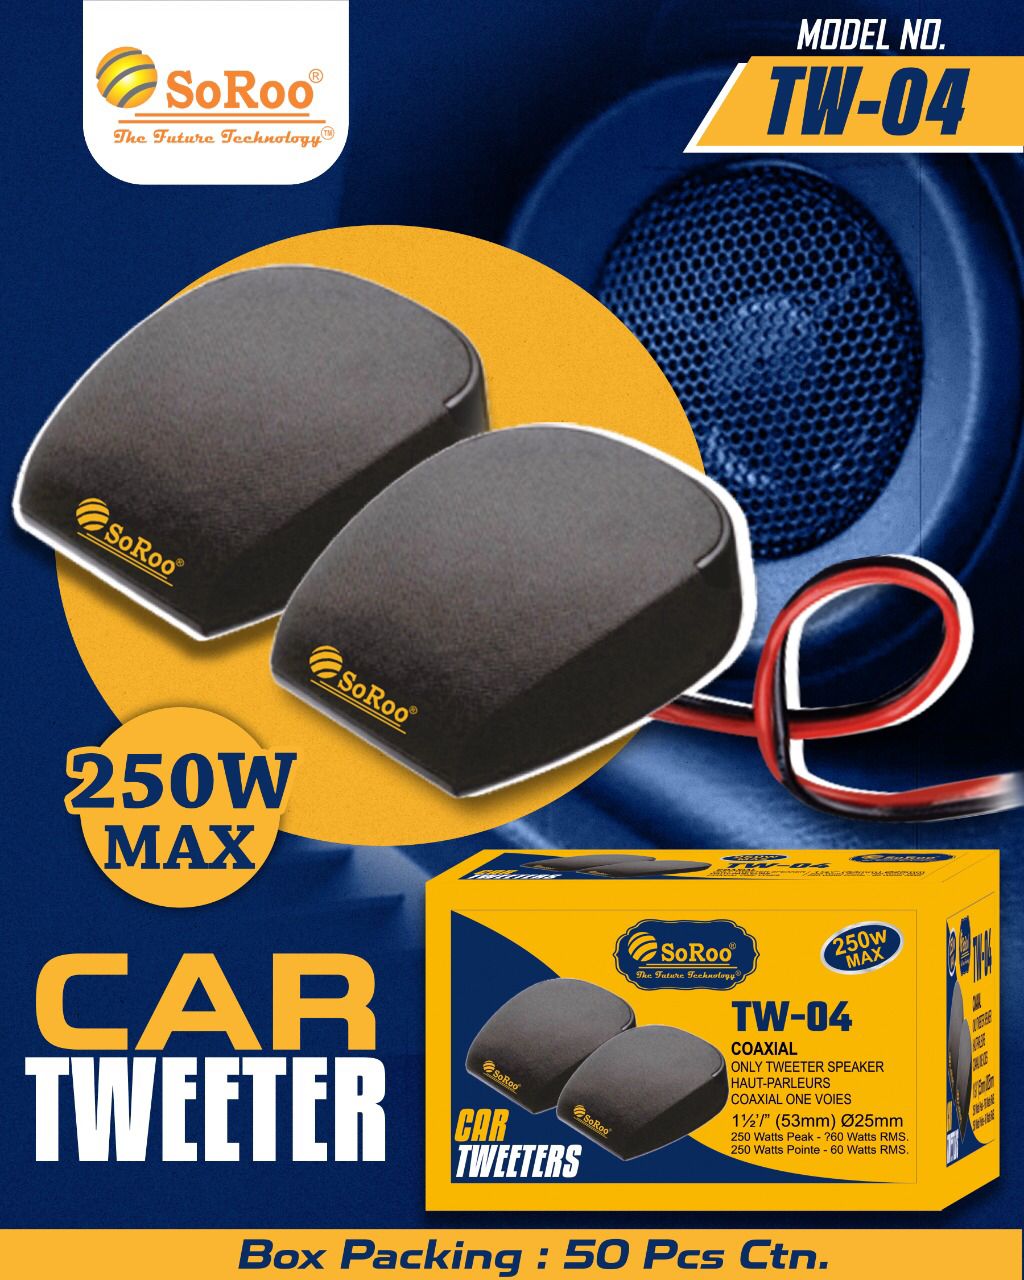 Soroo Car Tweeter TW-04